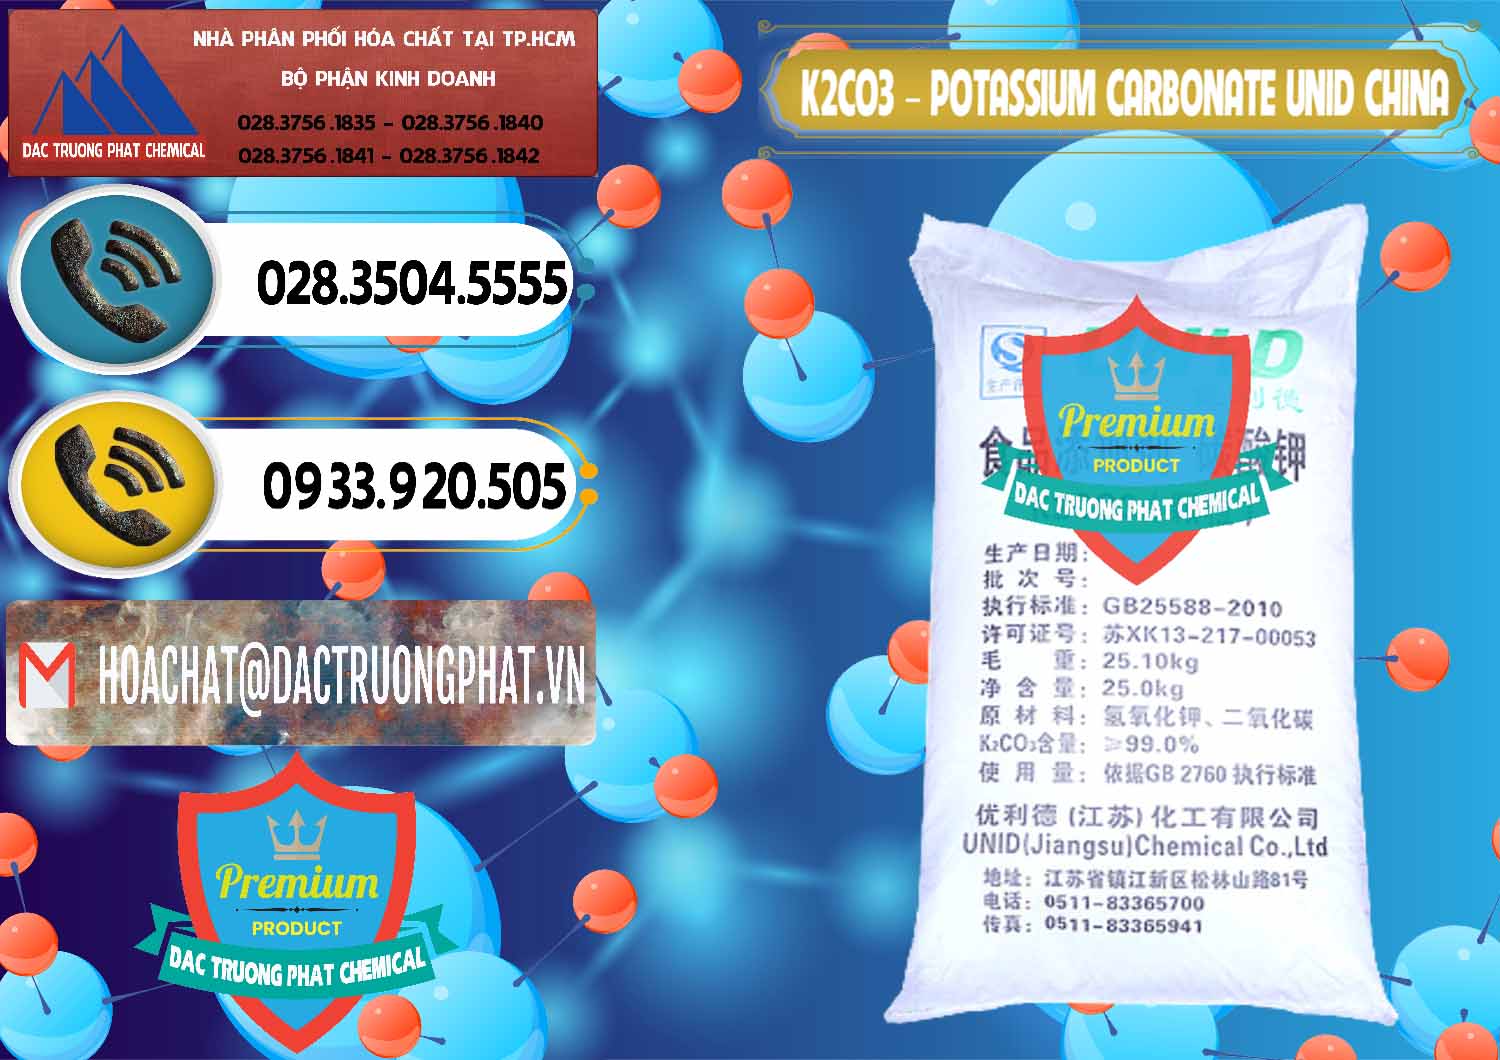 Nơi cung ứng - bán K2Co3 – Potassium Carbonate UNID Trung Quốc China - 0475 - Công ty chuyên cung cấp và kinh doanh hóa chất tại TP.HCM - hoachatdetnhuom.vn